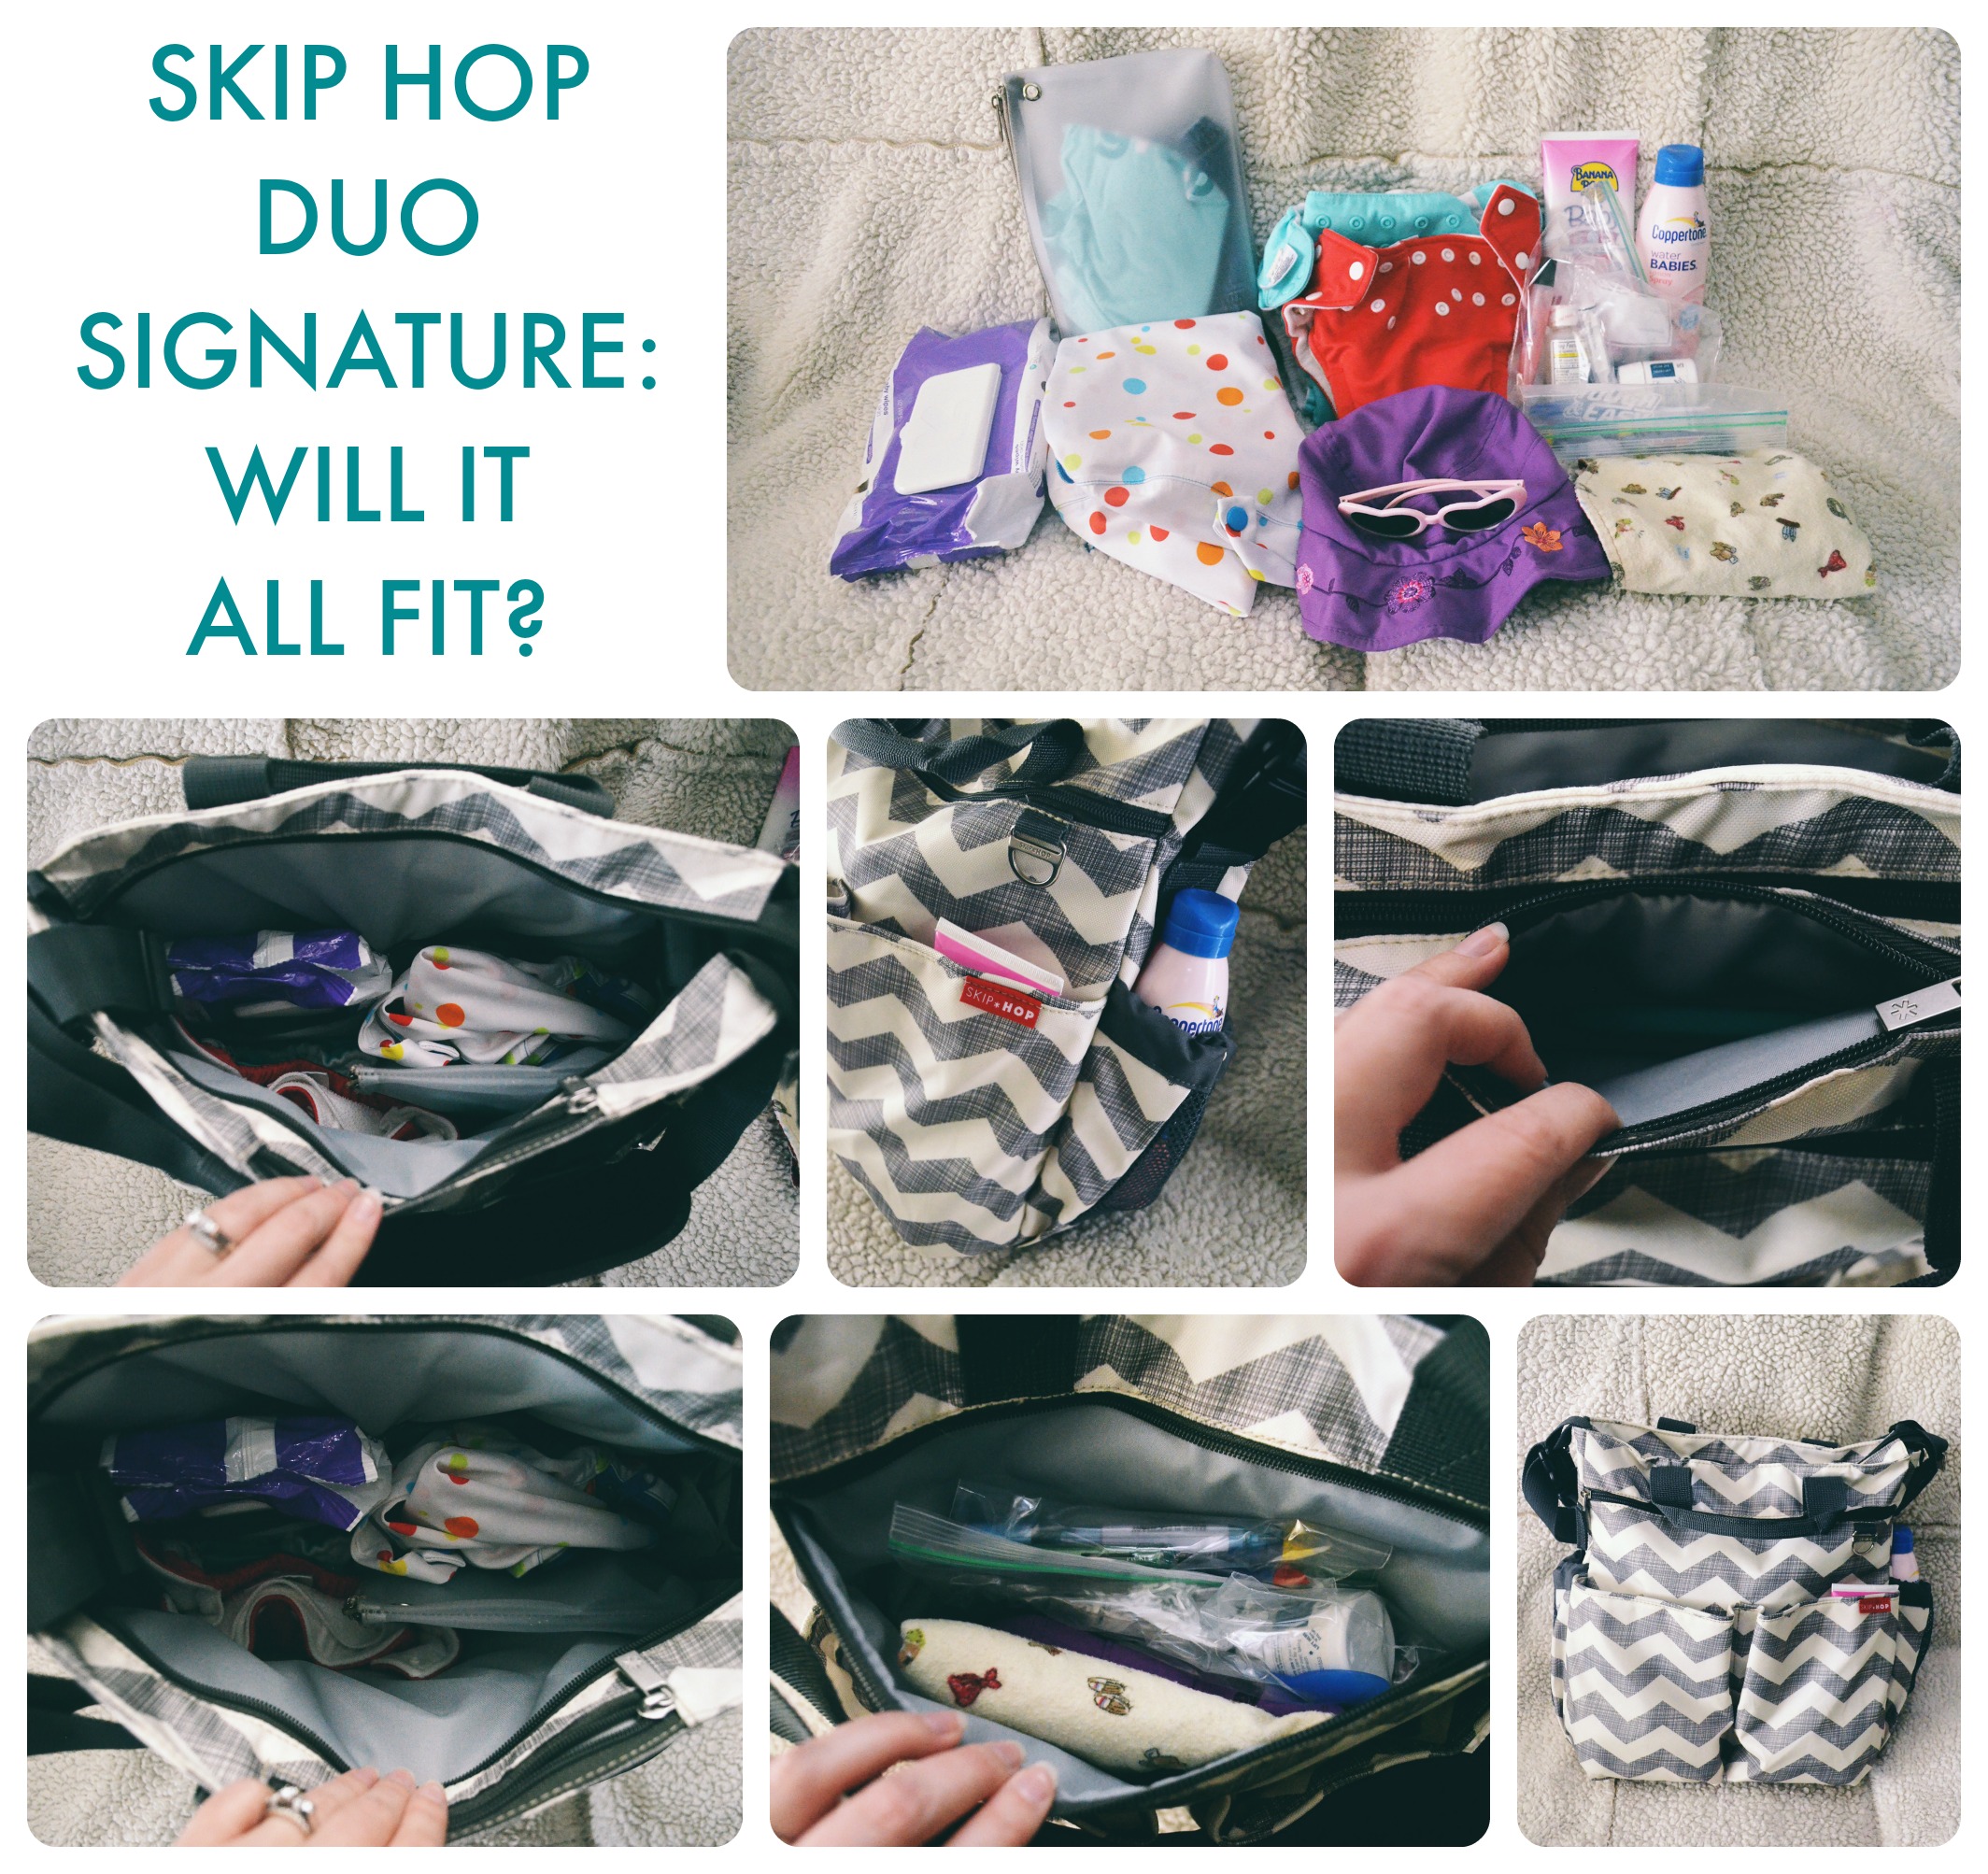 skip hop duo signature nappy bag